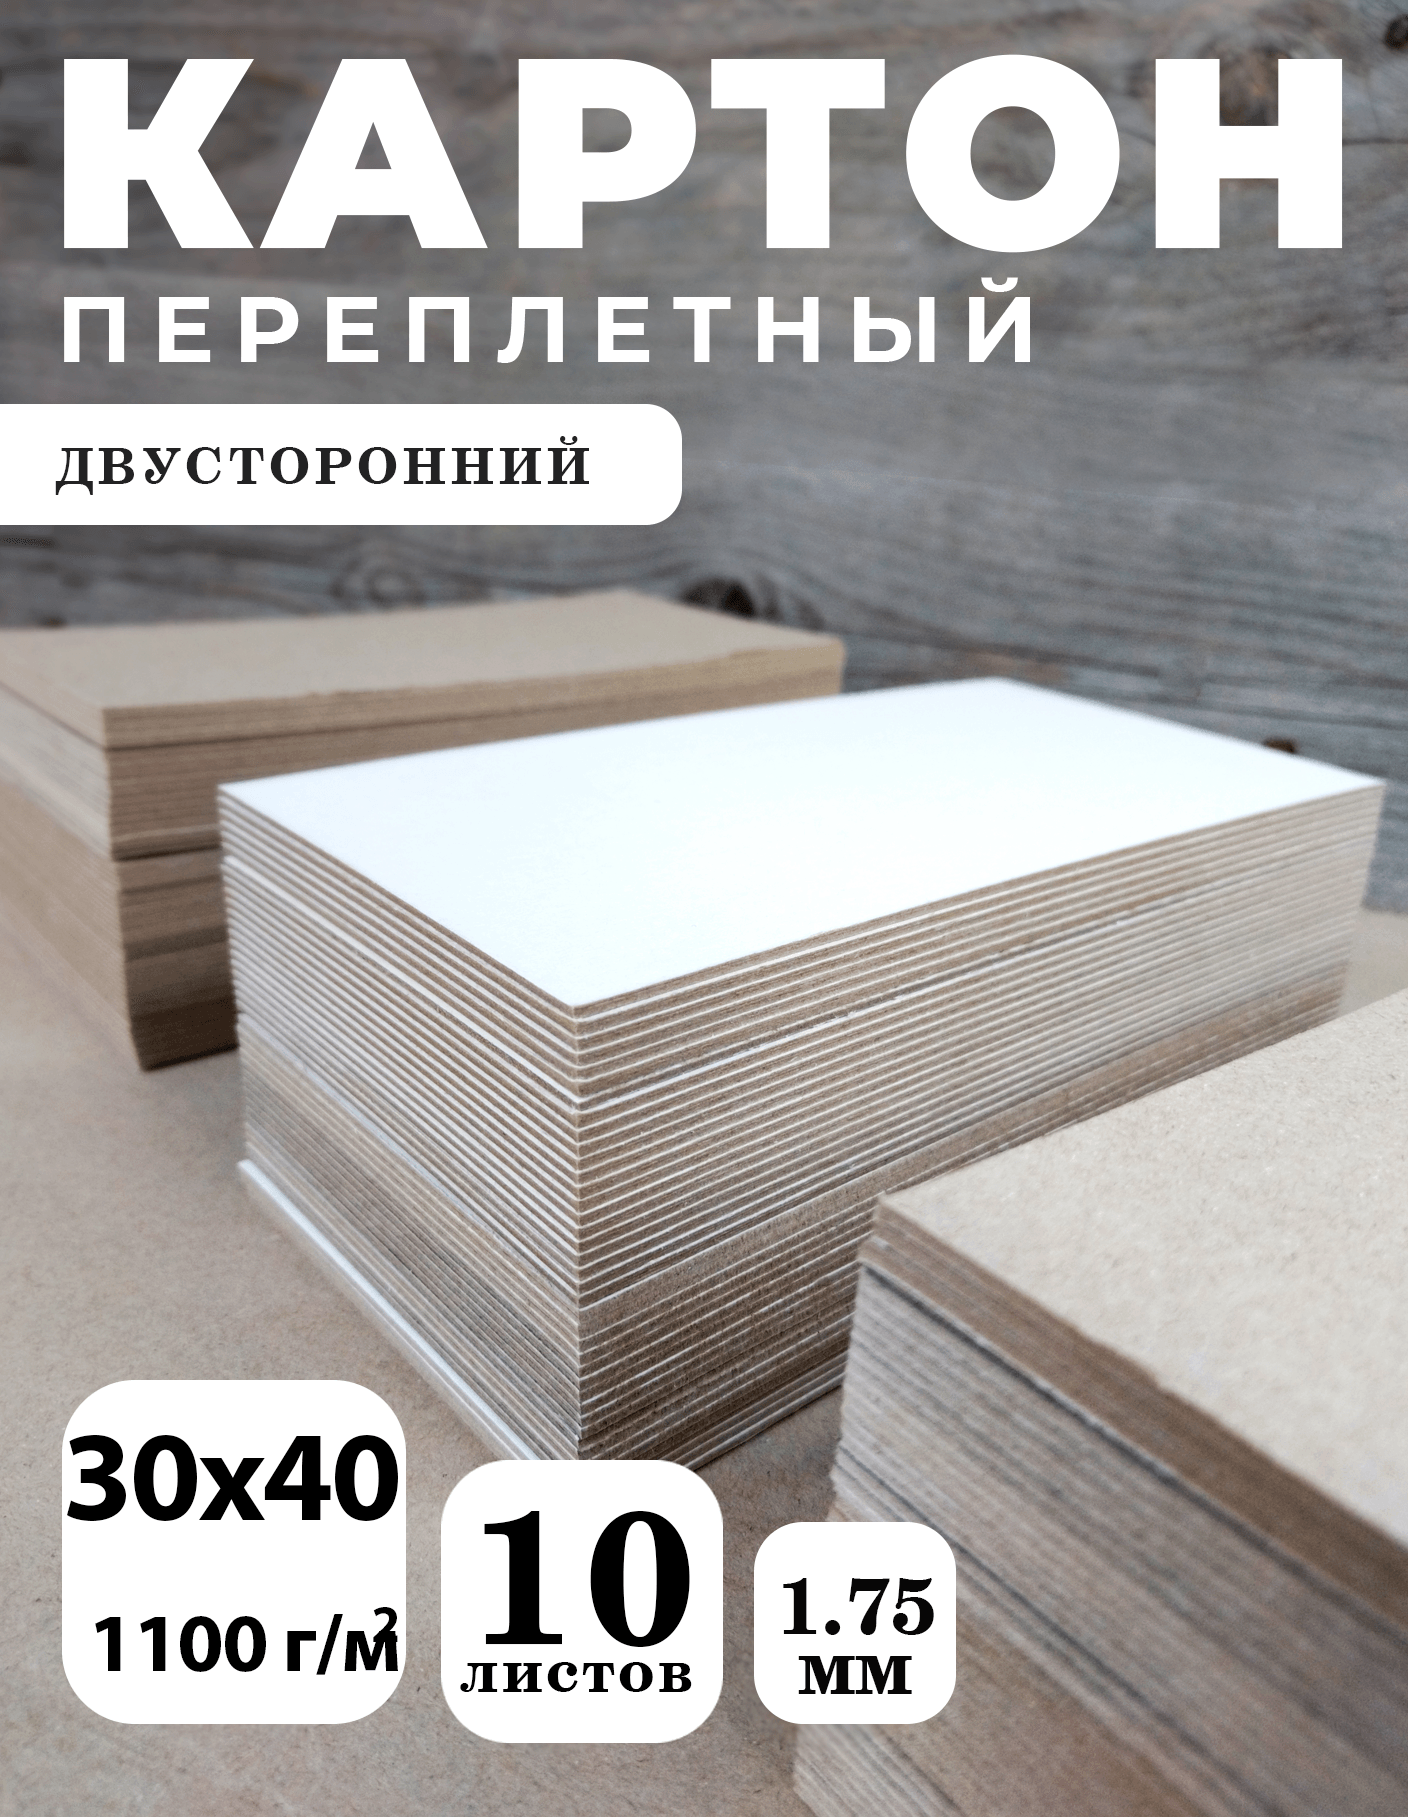 Переплетный картон двусторонний, 1,75 мм, формат 30х40 см, в упаковке 10 листов